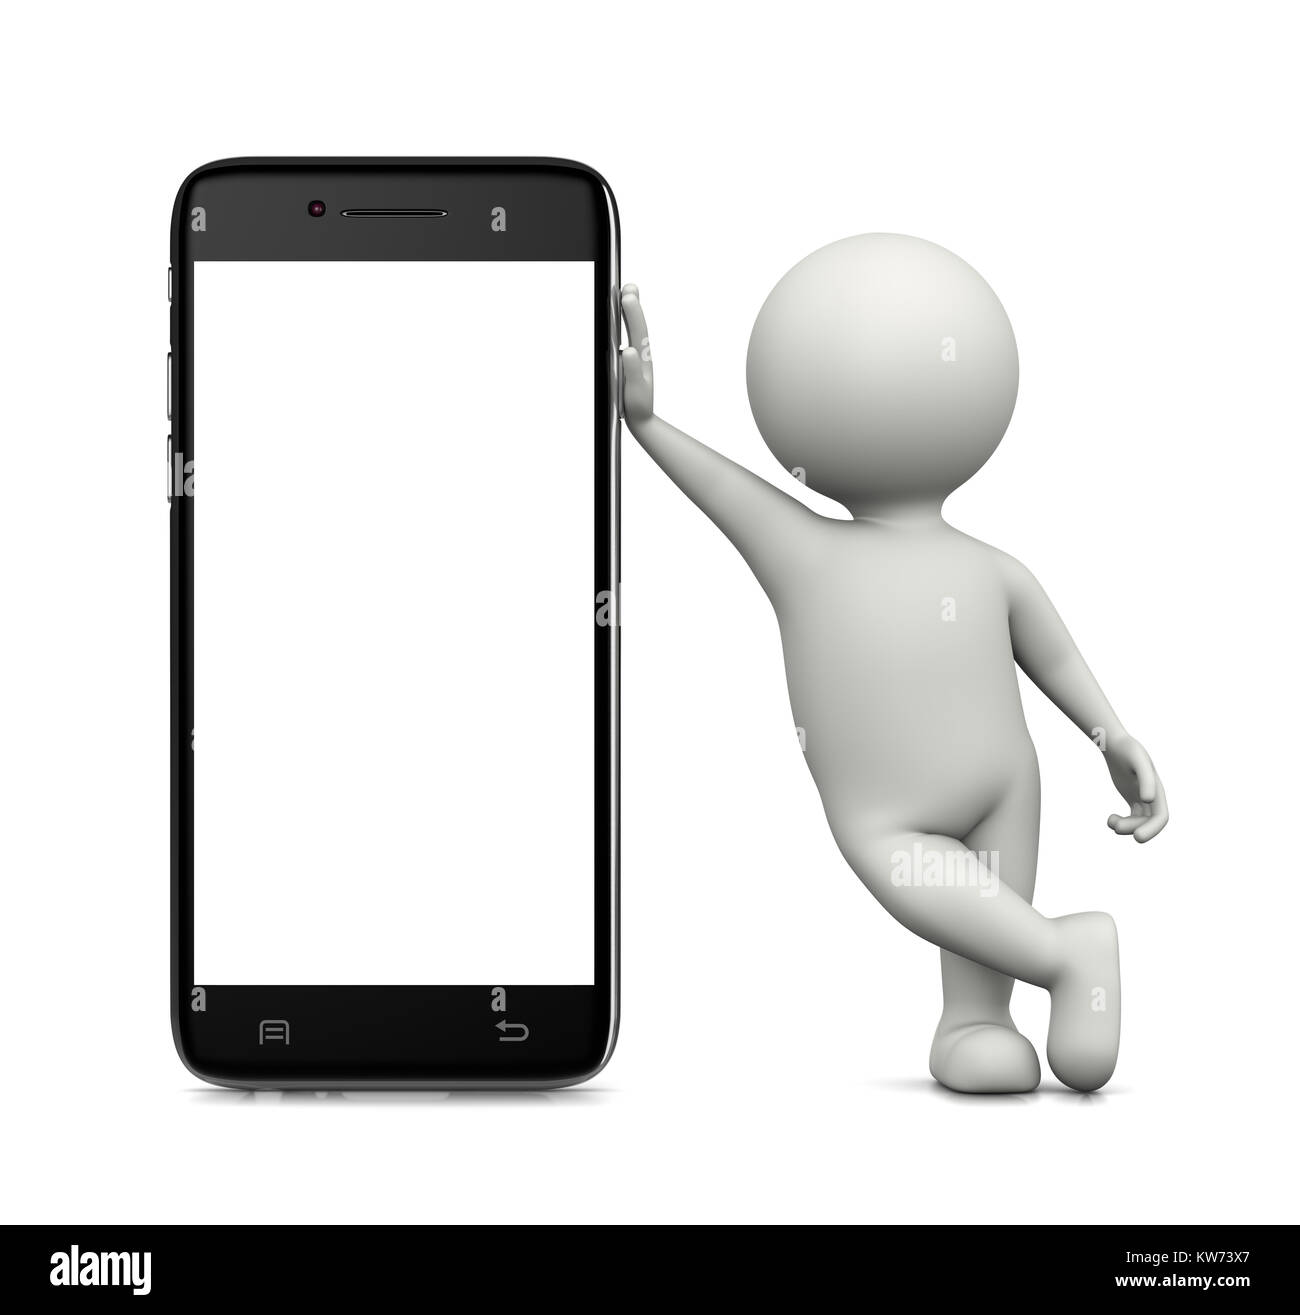 Personnage 3d blanc se pencha sur un smartphone d'affichage vierge blanc permanent 3D Illustration sur fond blanc Banque D'Images